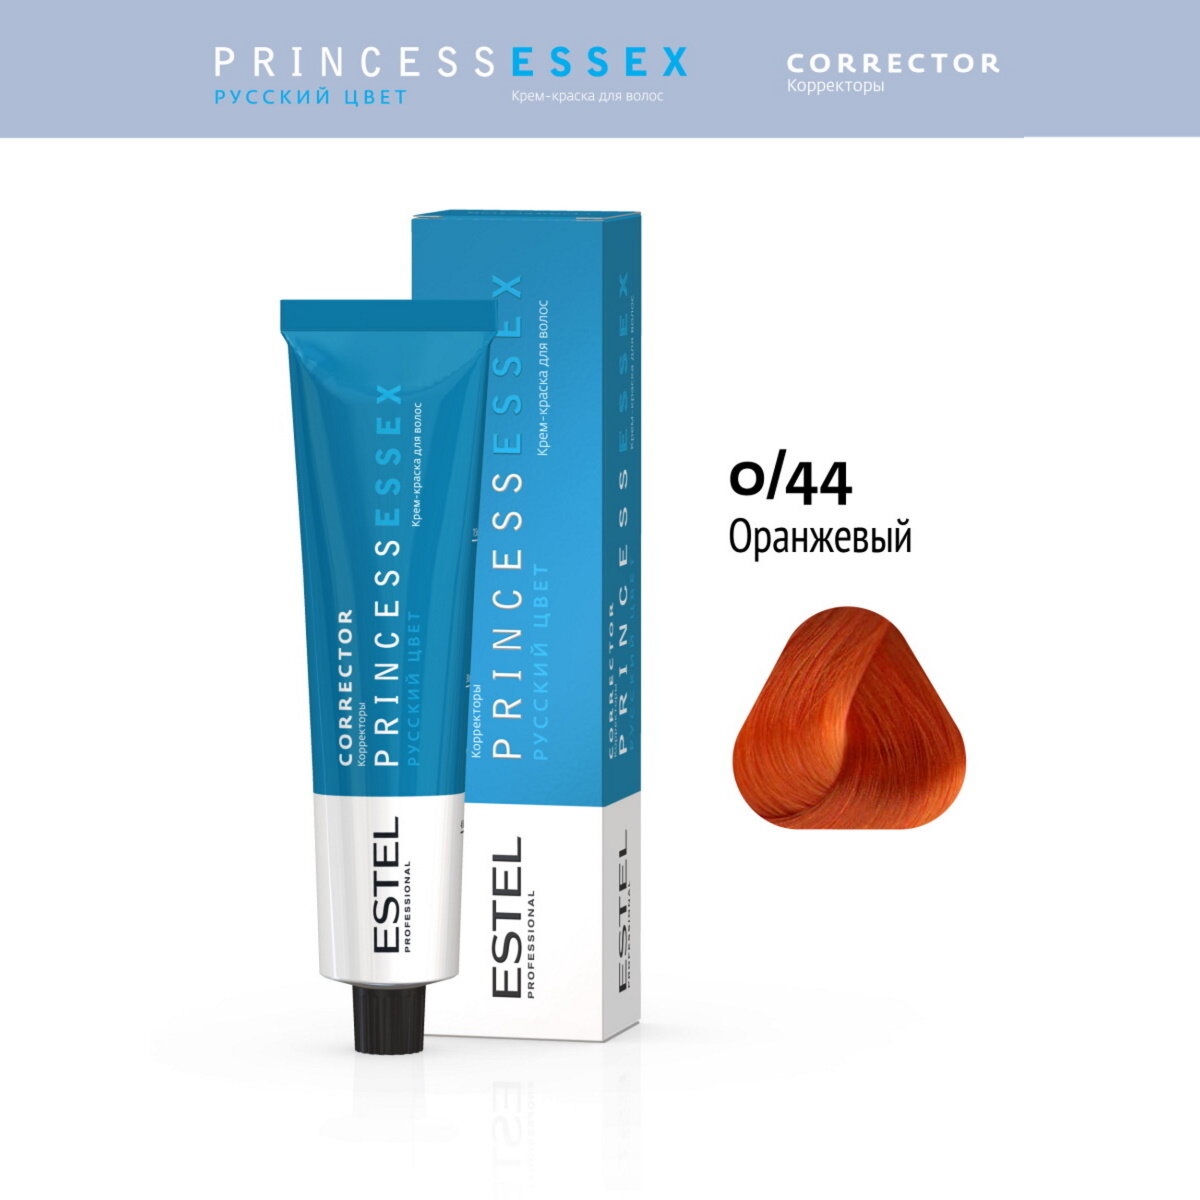 Крем-краска PRINCESS ESSEX CORRECT для окрашивания волос ESTEL PROFESSIONAL 0/44 оранжевый 60 мл